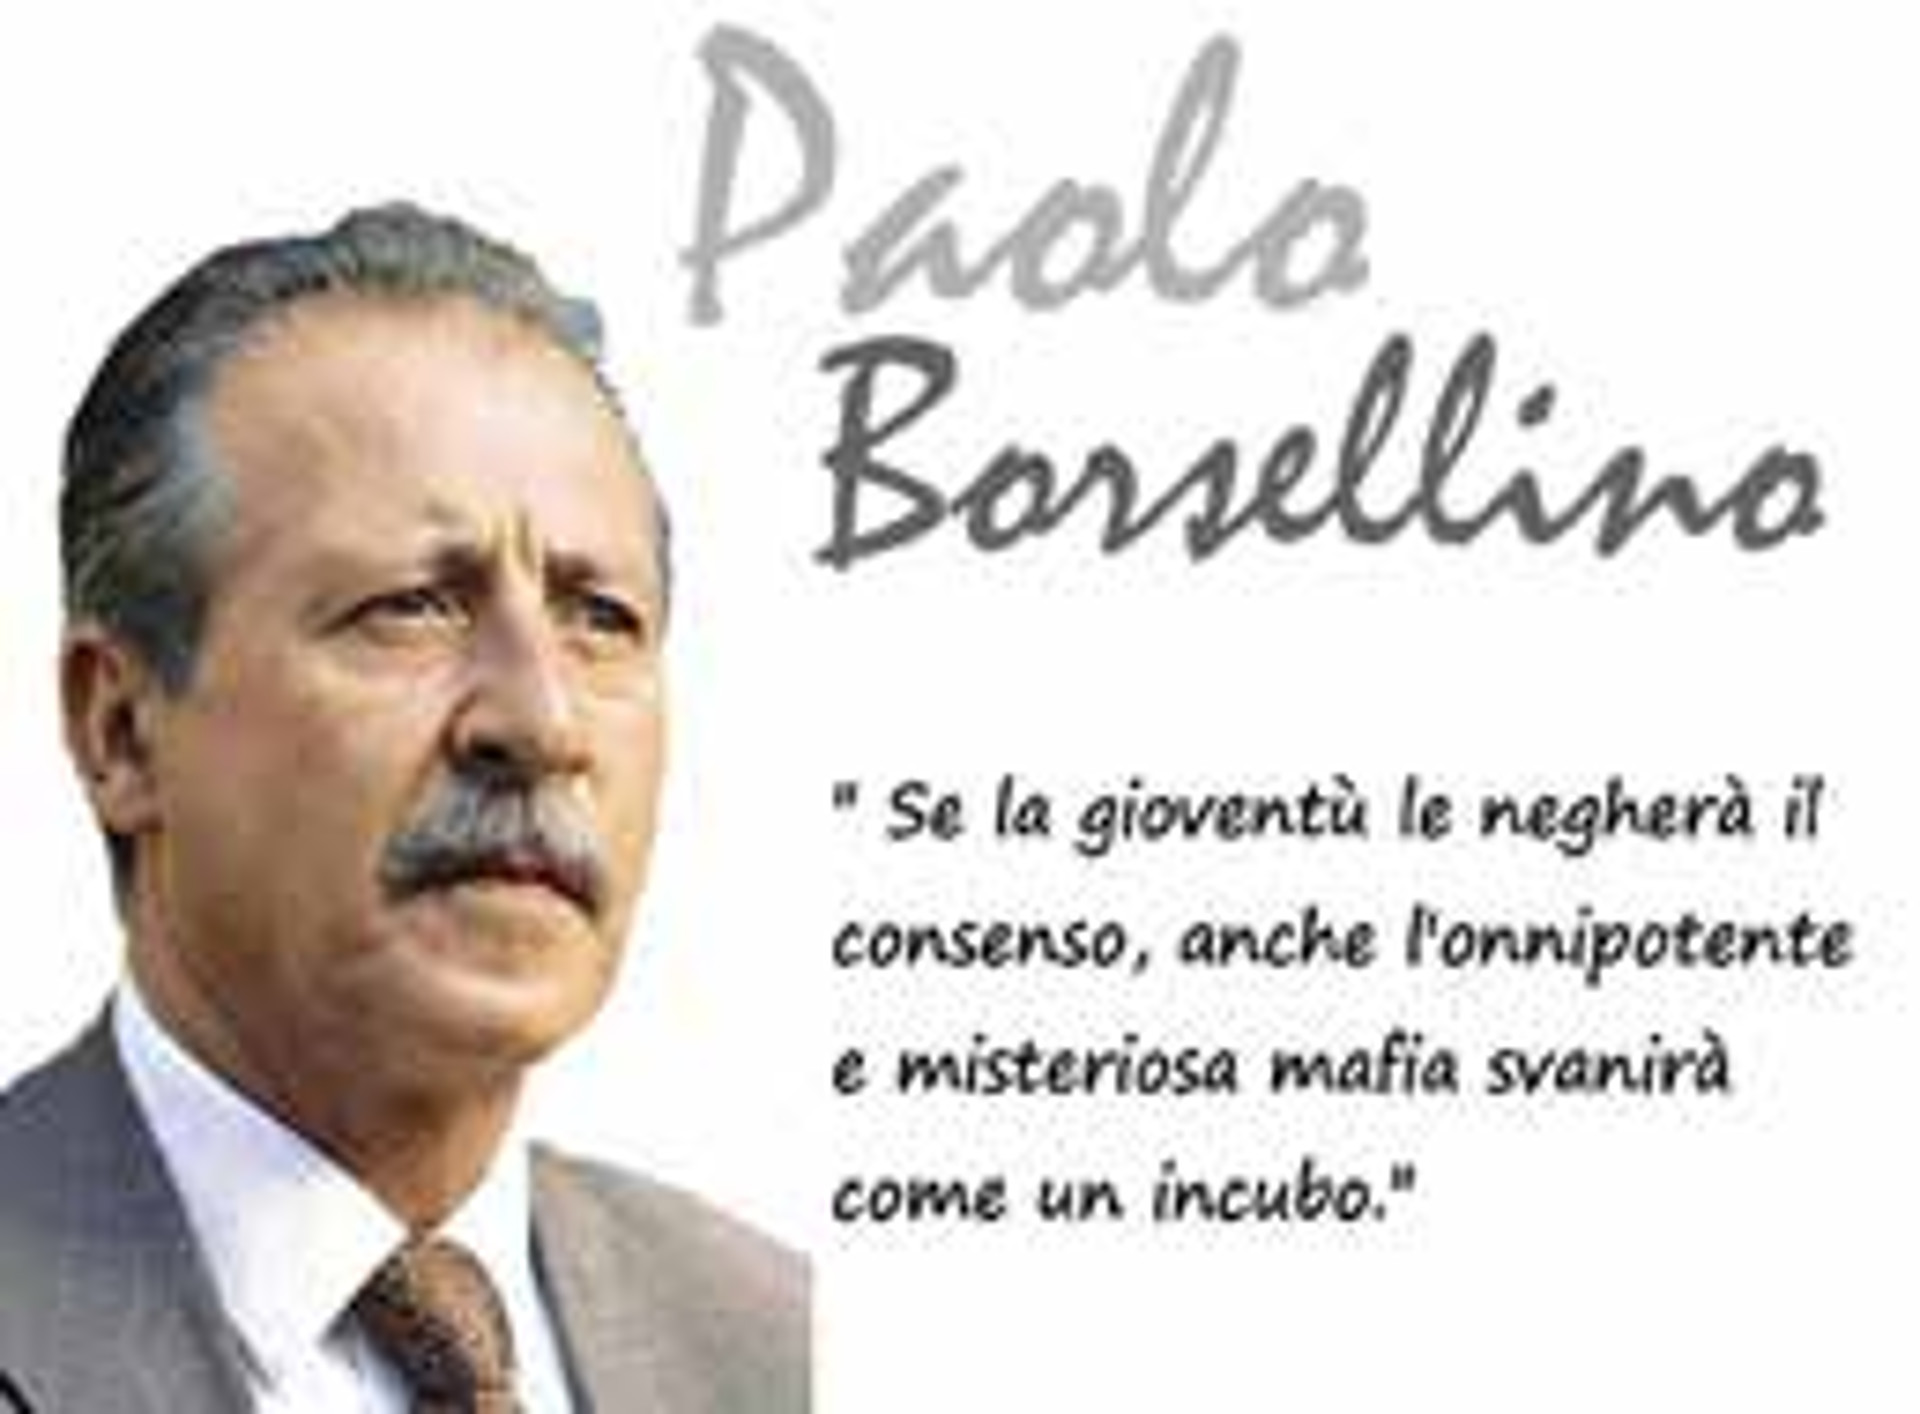 Attentato a Paolo Borsellino – Oratorio Paladina